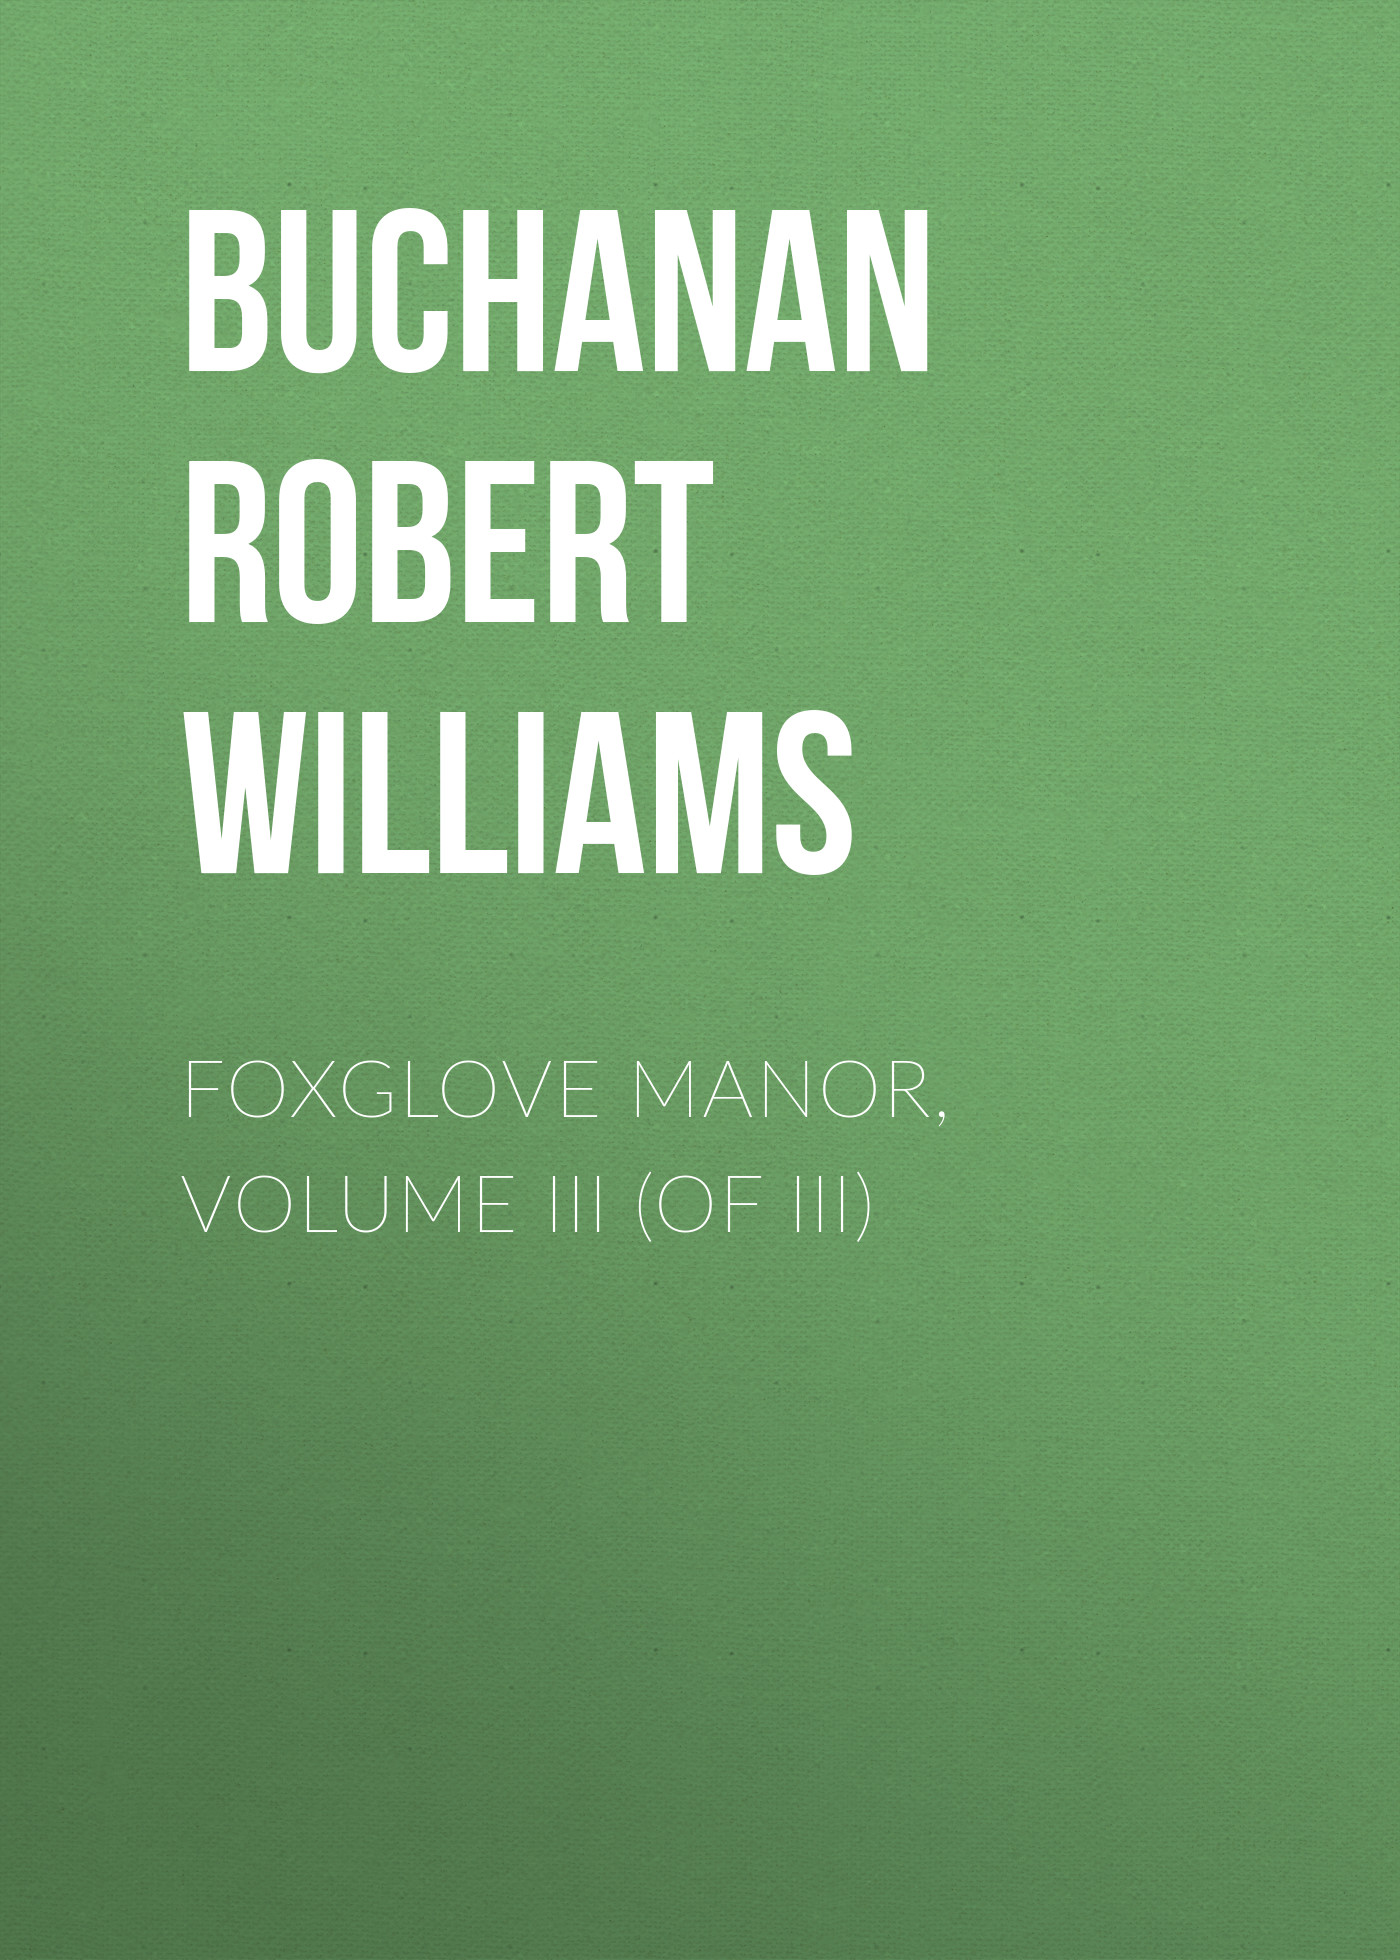 Foxglove Manor, Volume III (of III)